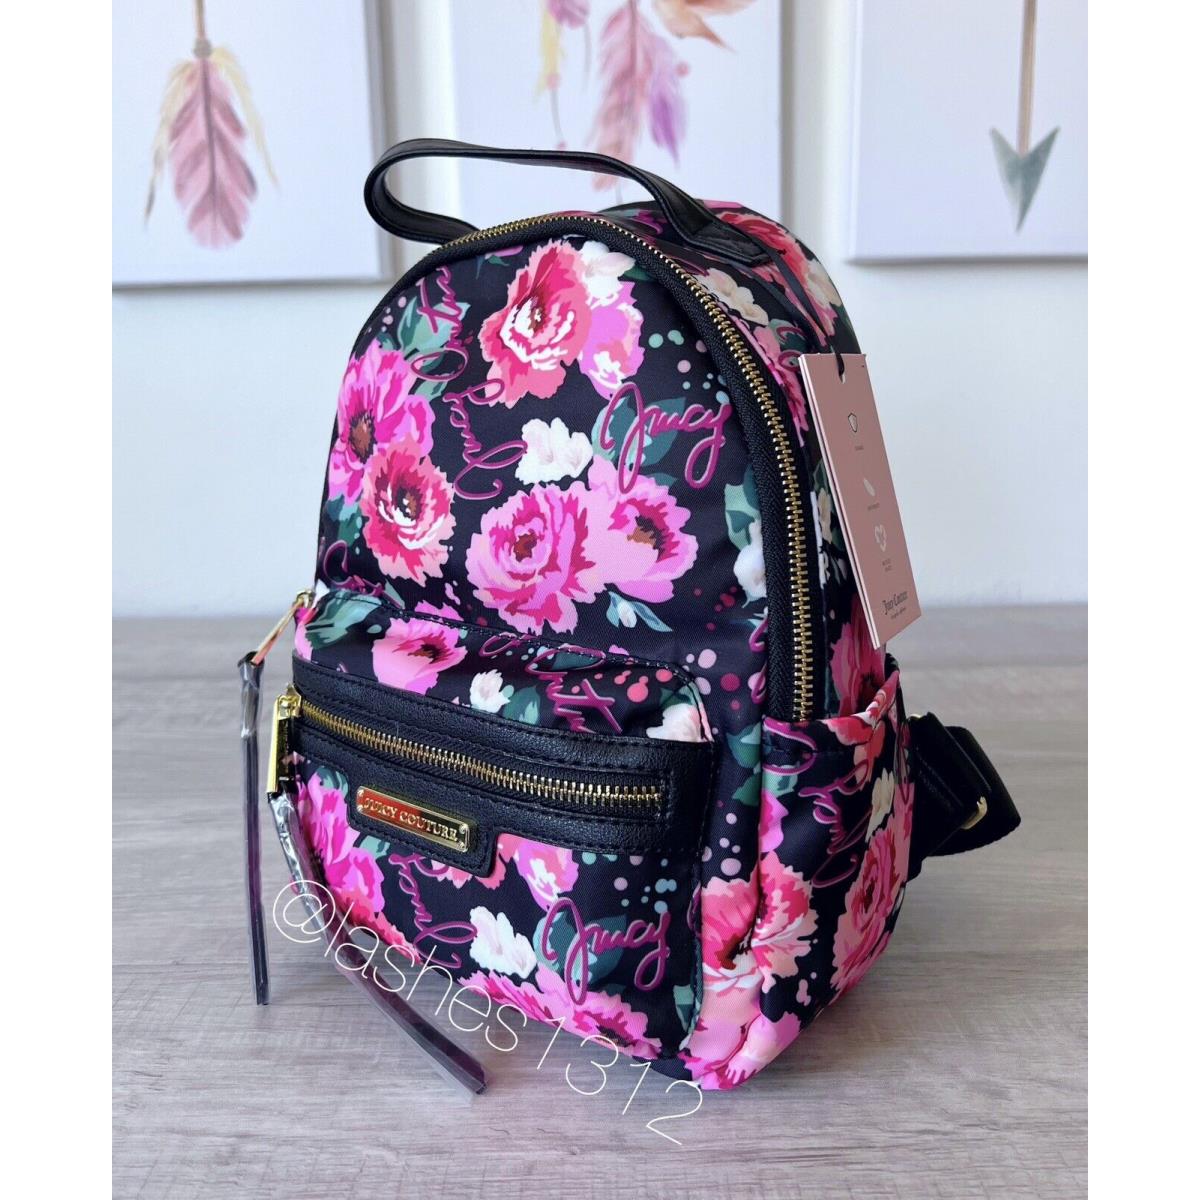 Juicy Couture Bag Rosie Mini Backpack - Black Floral Print